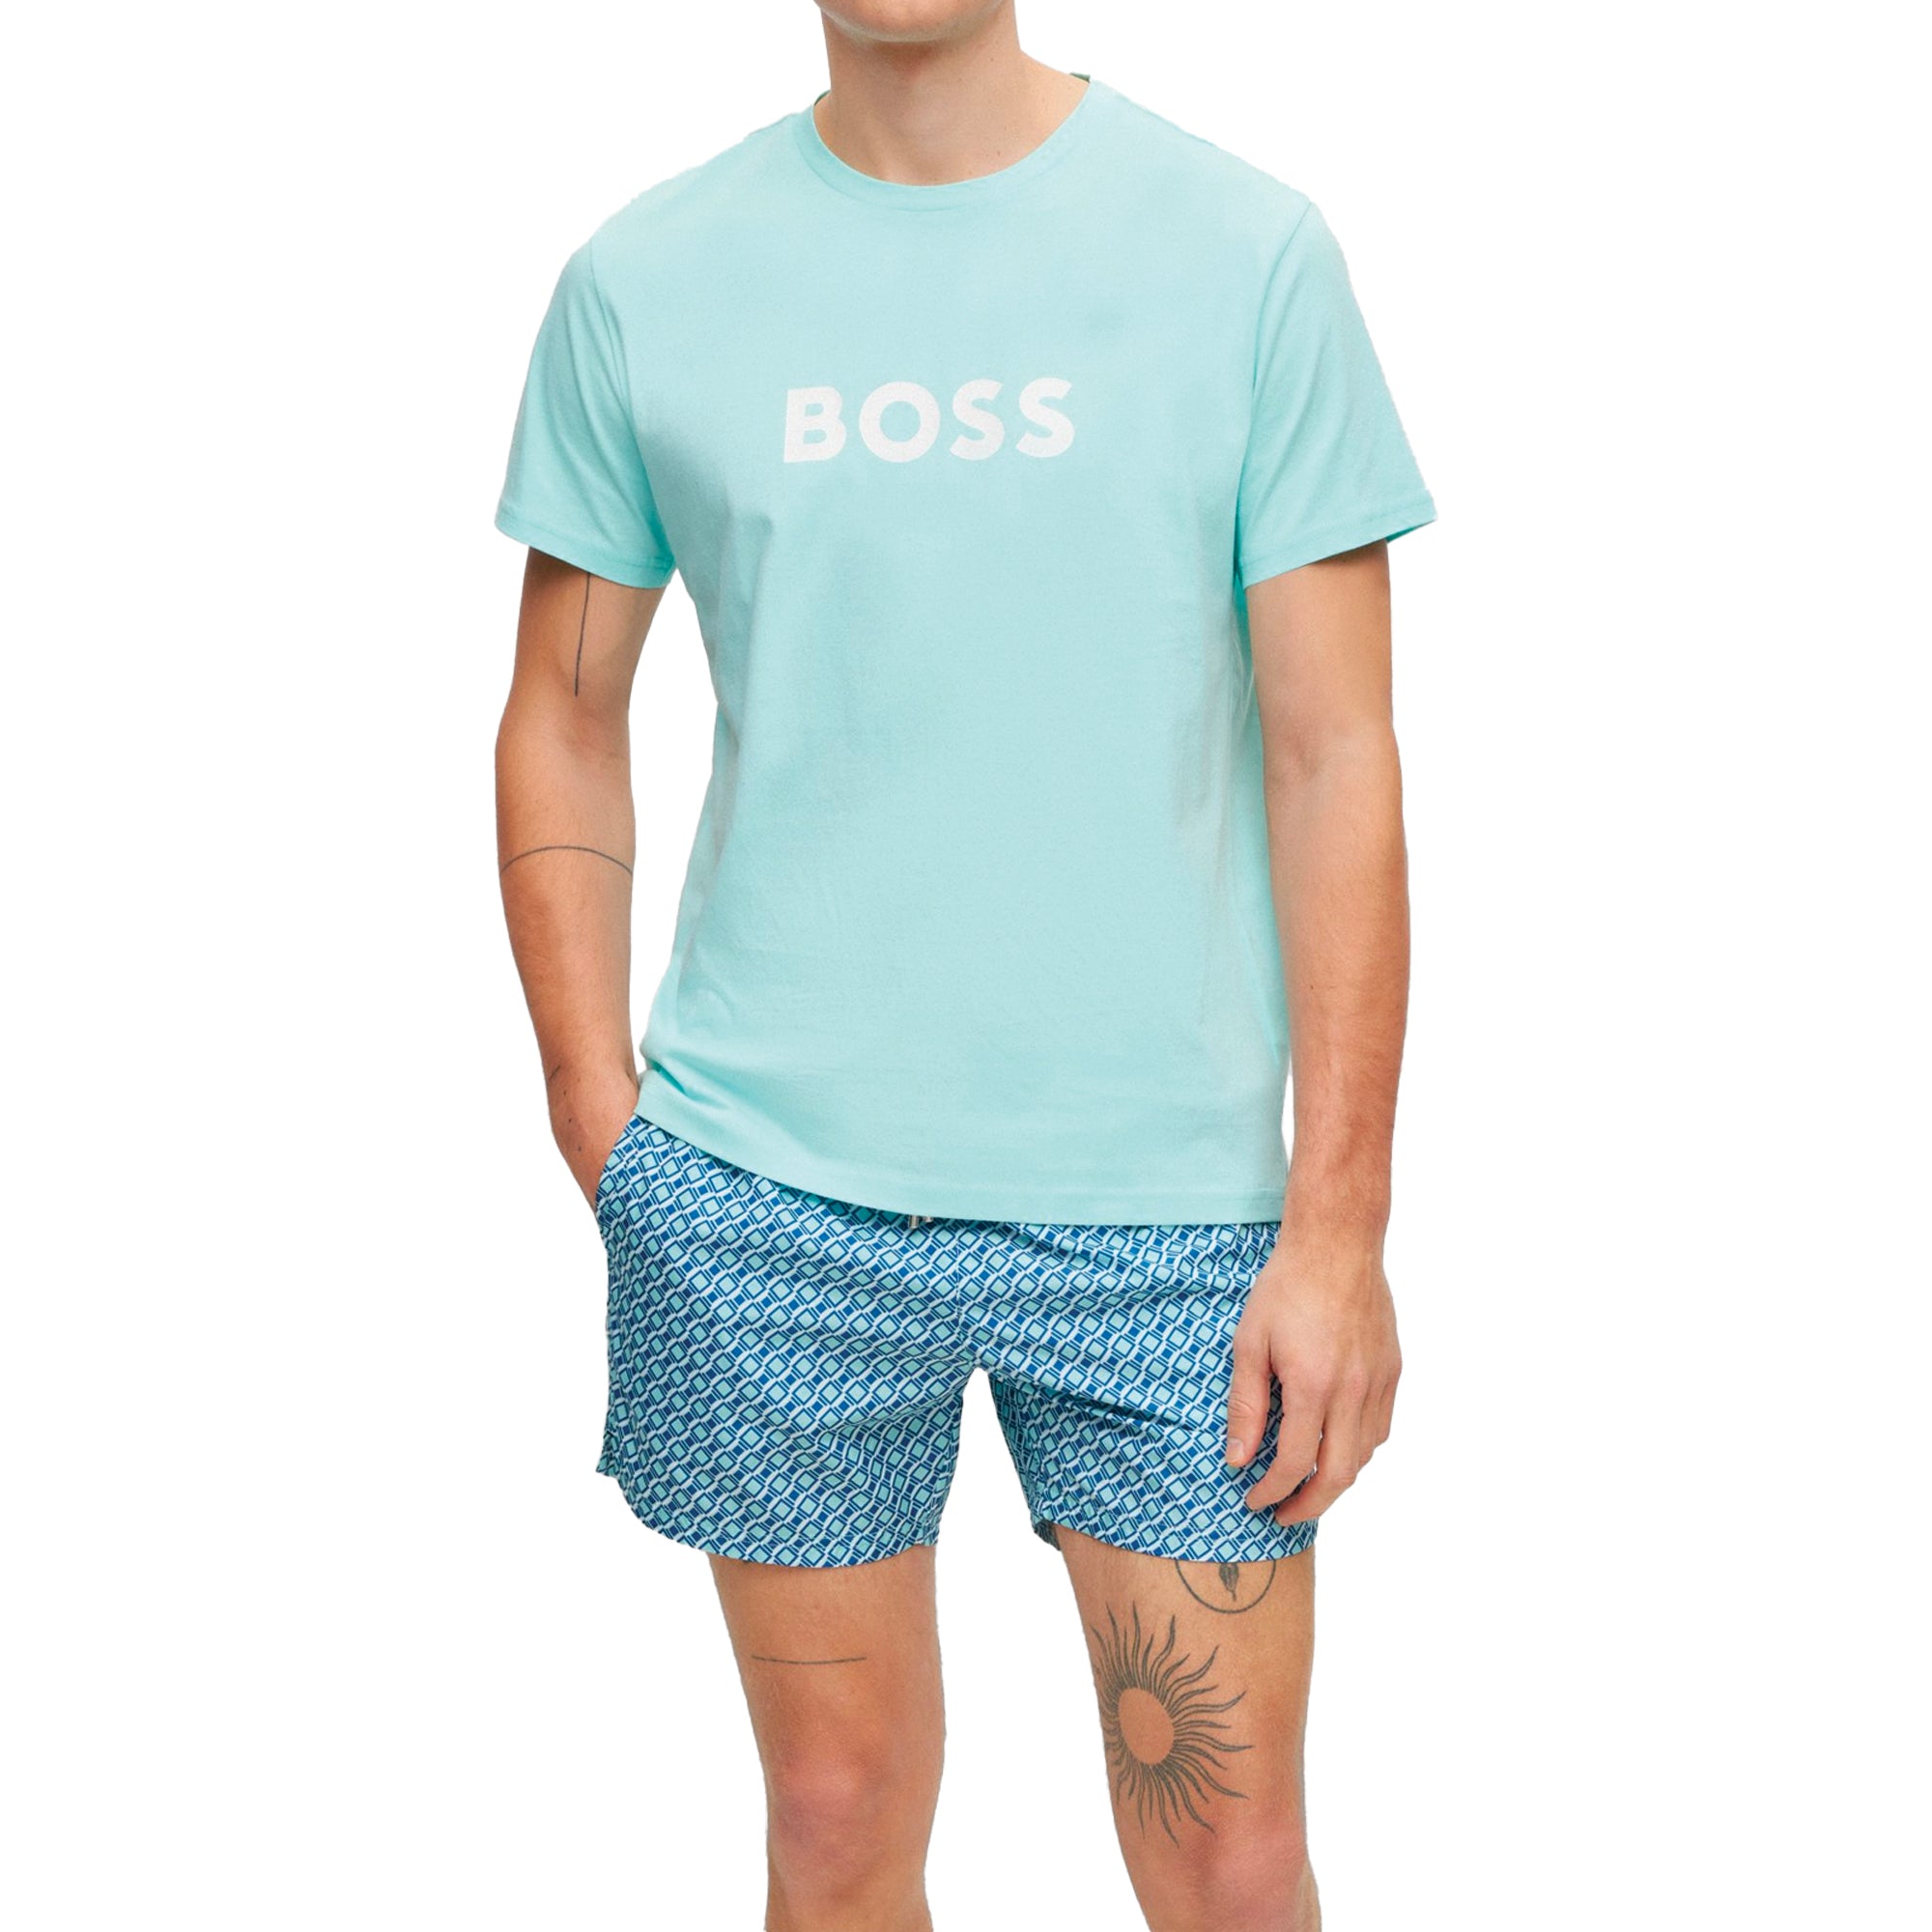 Boss RN T-Shirt - Spearmint Green